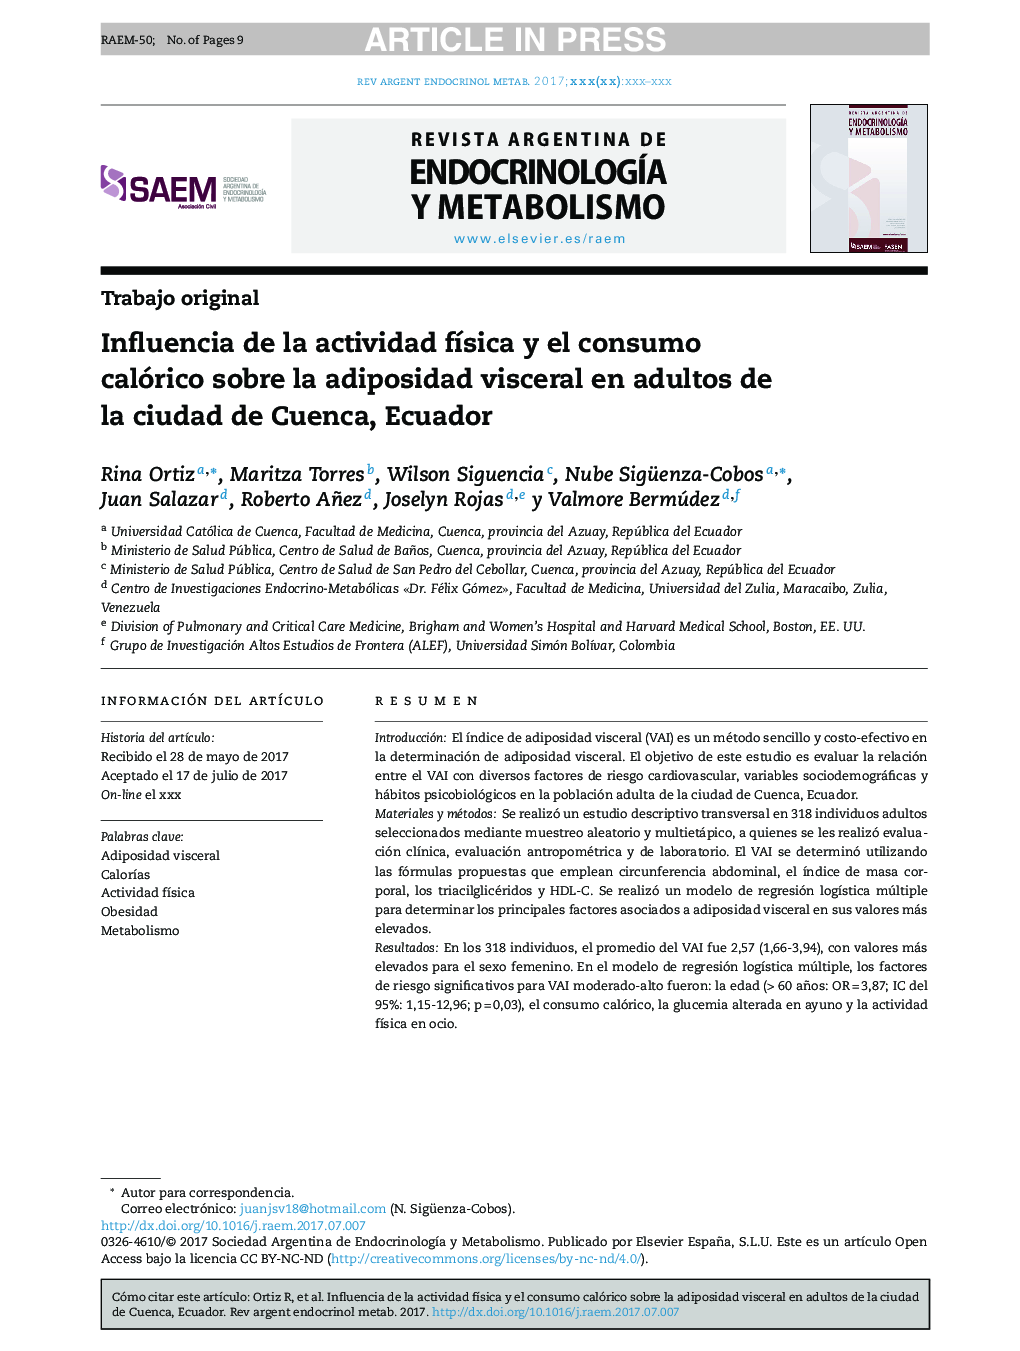 تأثیر فعالیت بدنی و مصرف کالری بر چربی شکم در بزرگسالان در شهر کوئنکا، اکوادور 